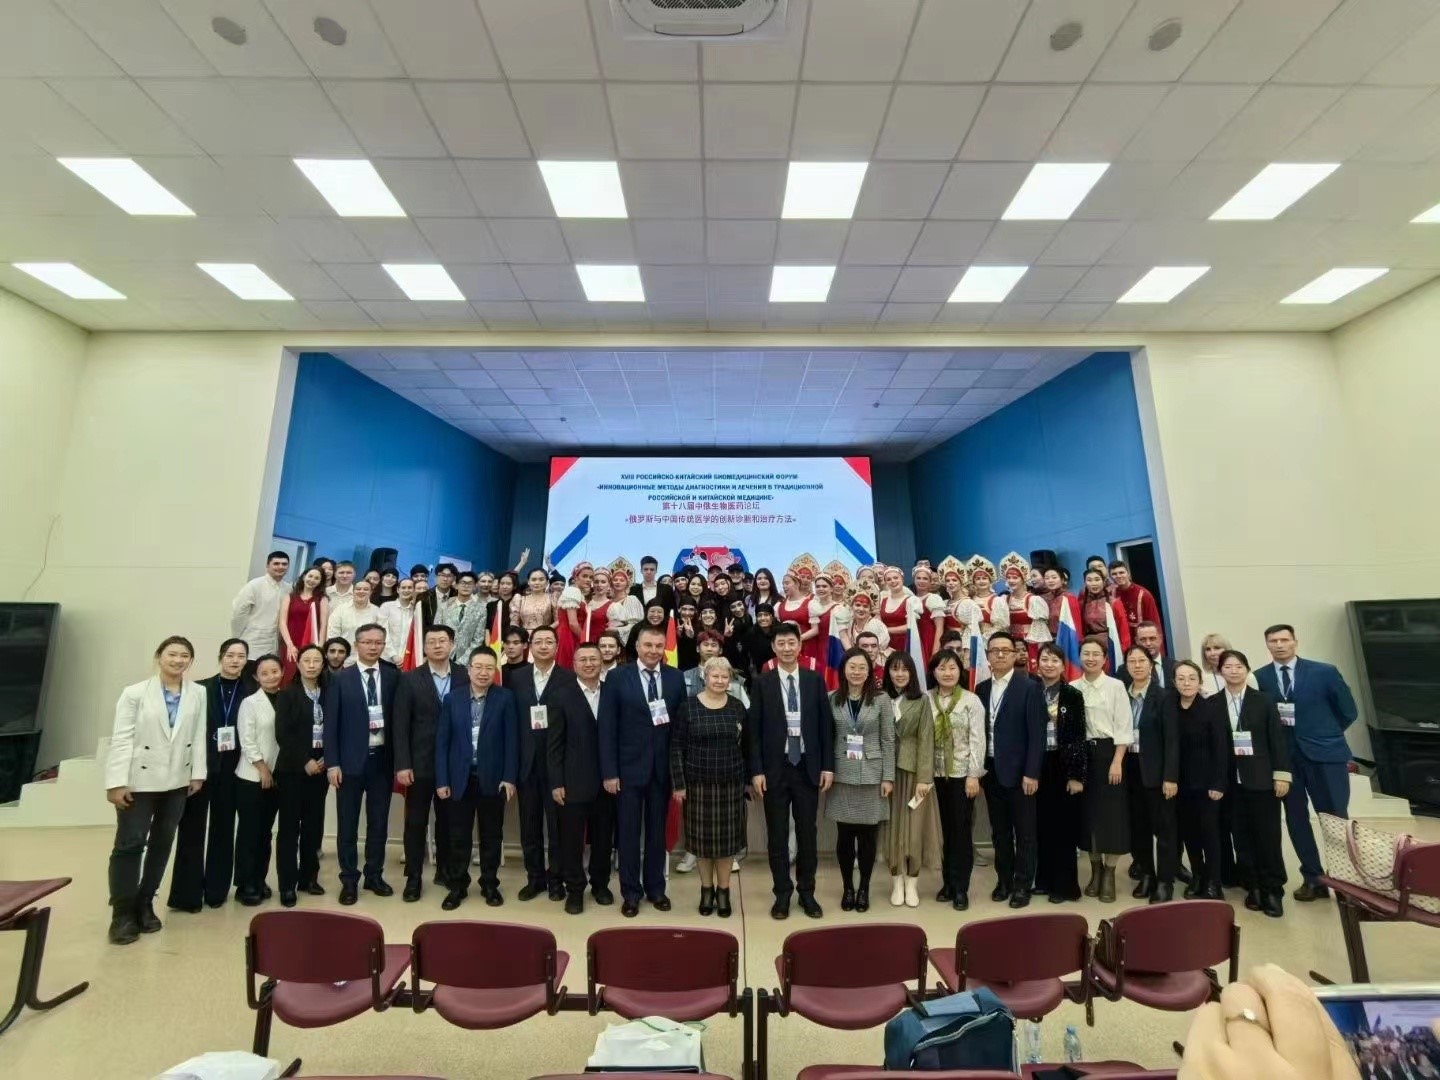 第十八届中俄生物医药论坛暨向北开放学术交流会议在俄举行